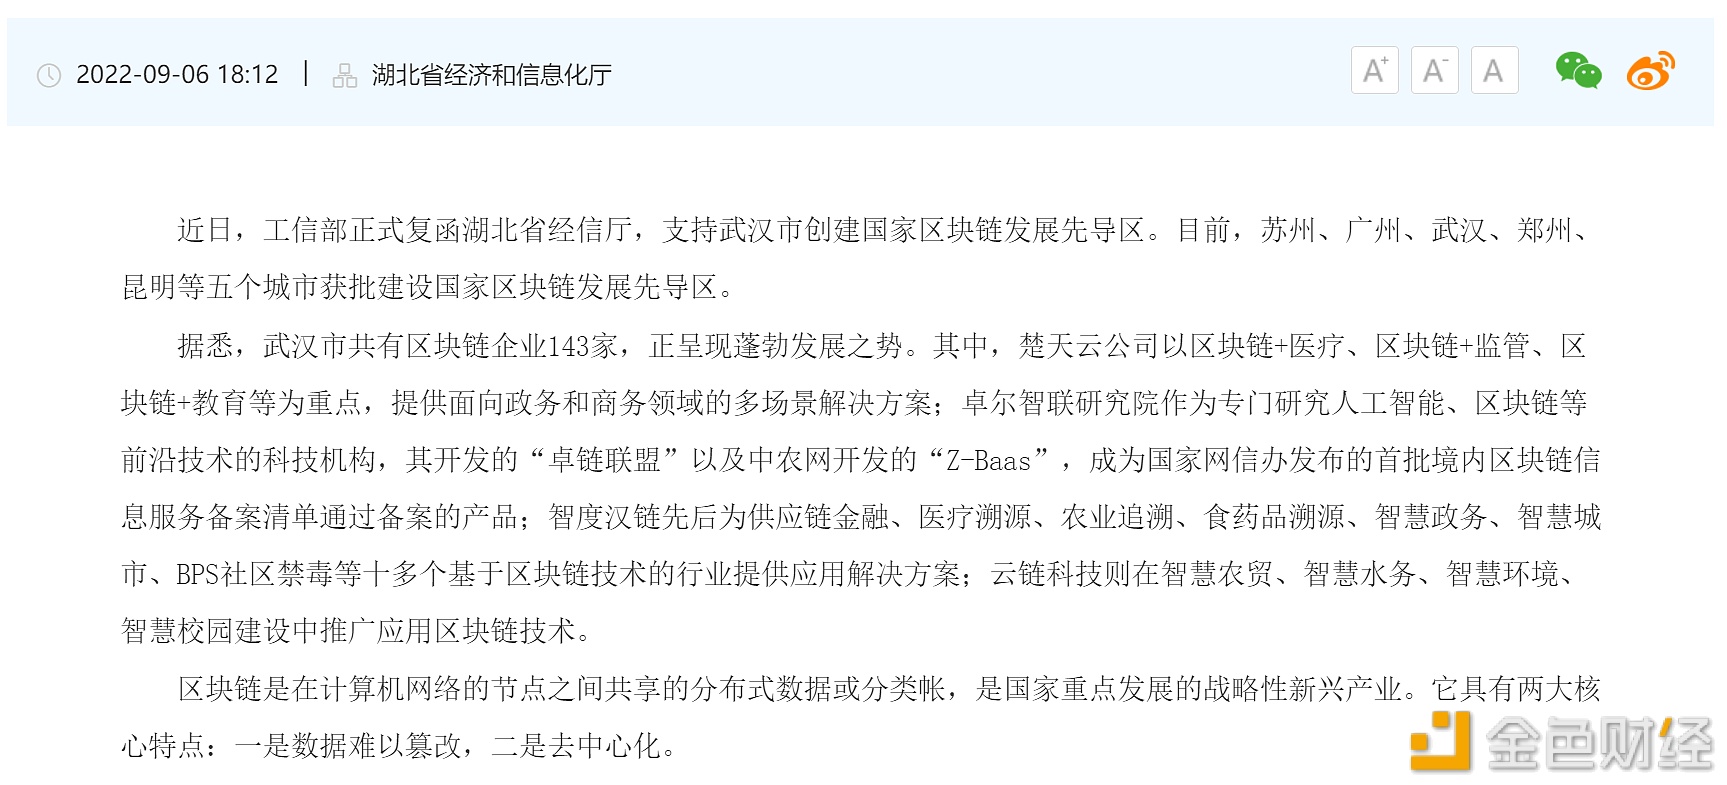 区块链资讯集合：苏州、广州、武汉、郑州、昆明获批建设国家区块链发展先导区